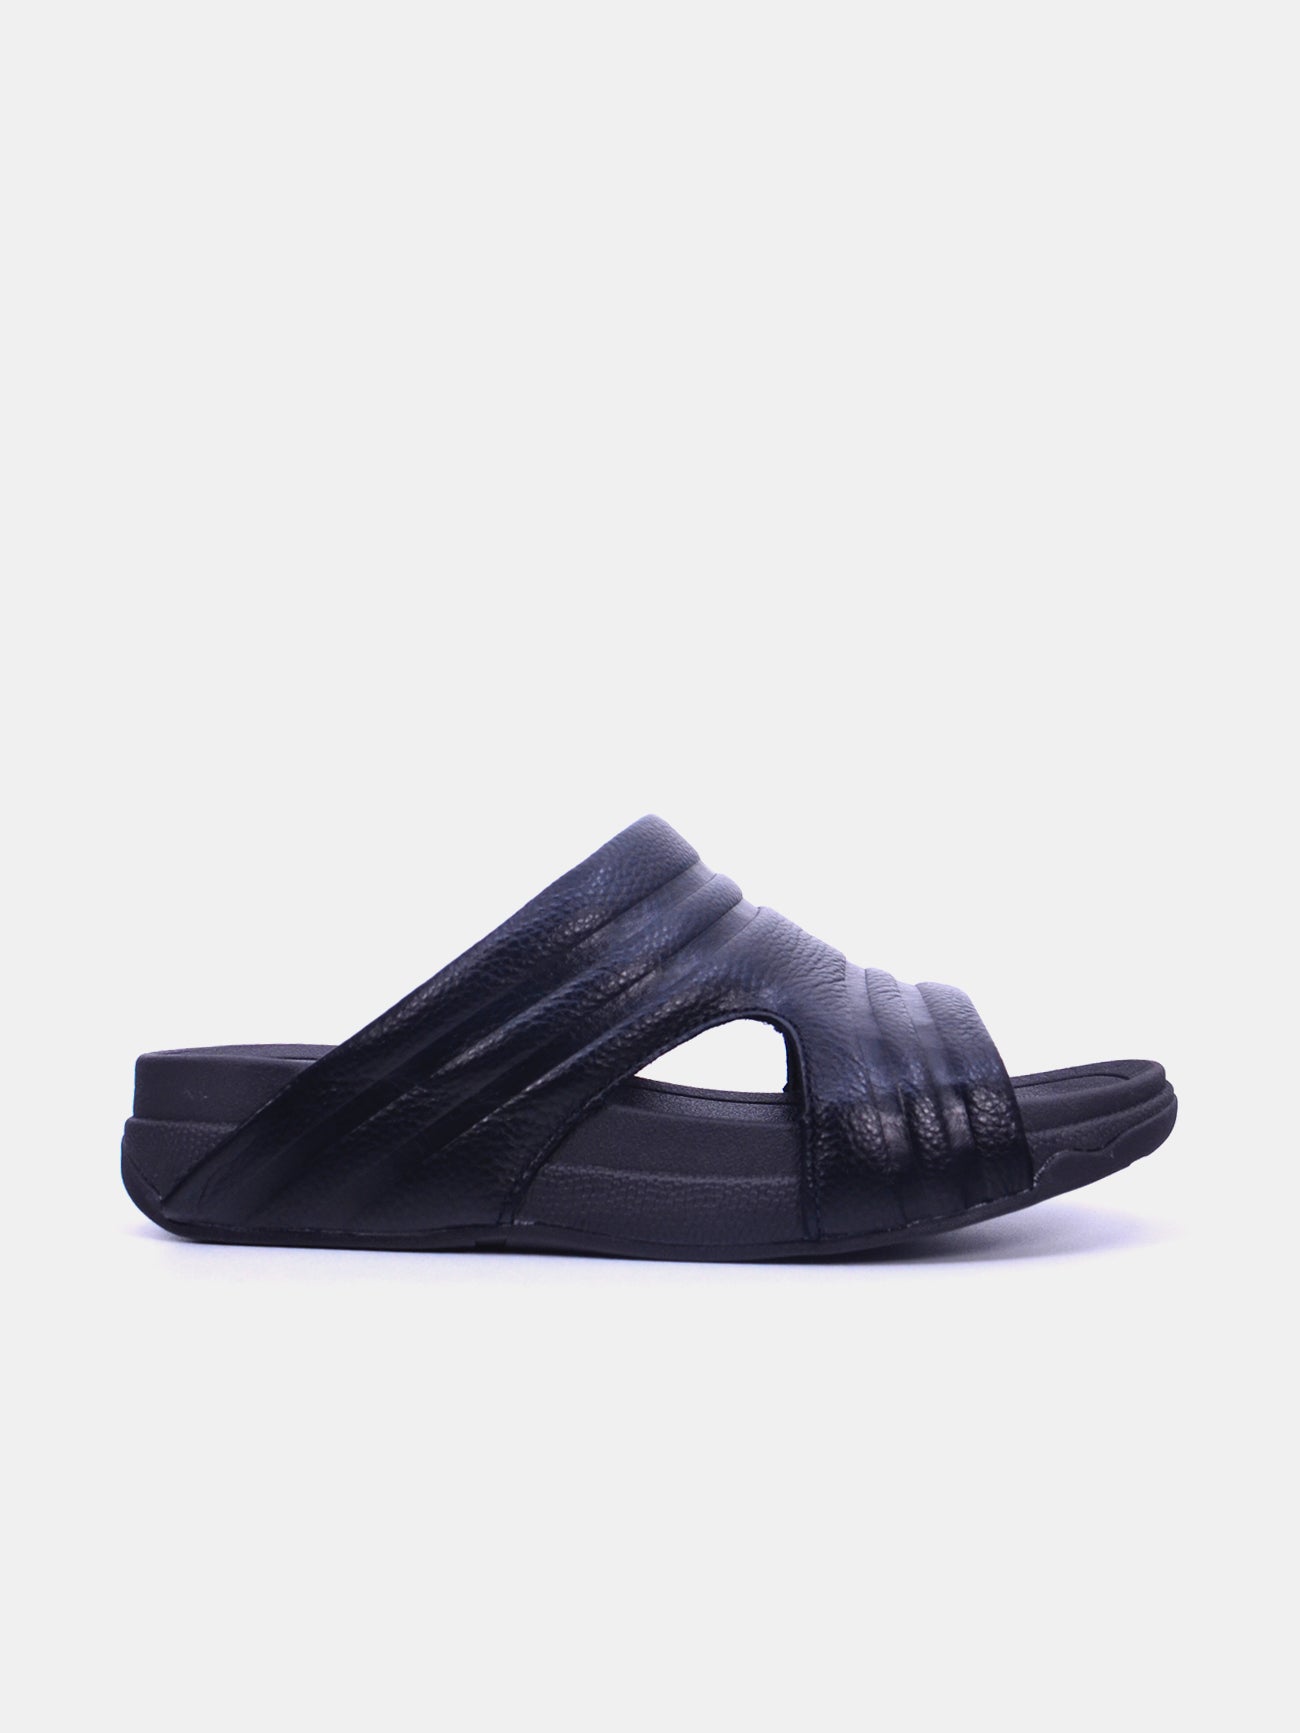 Barjeel Uno 20254 Men's Arabic Sandals #color_Black